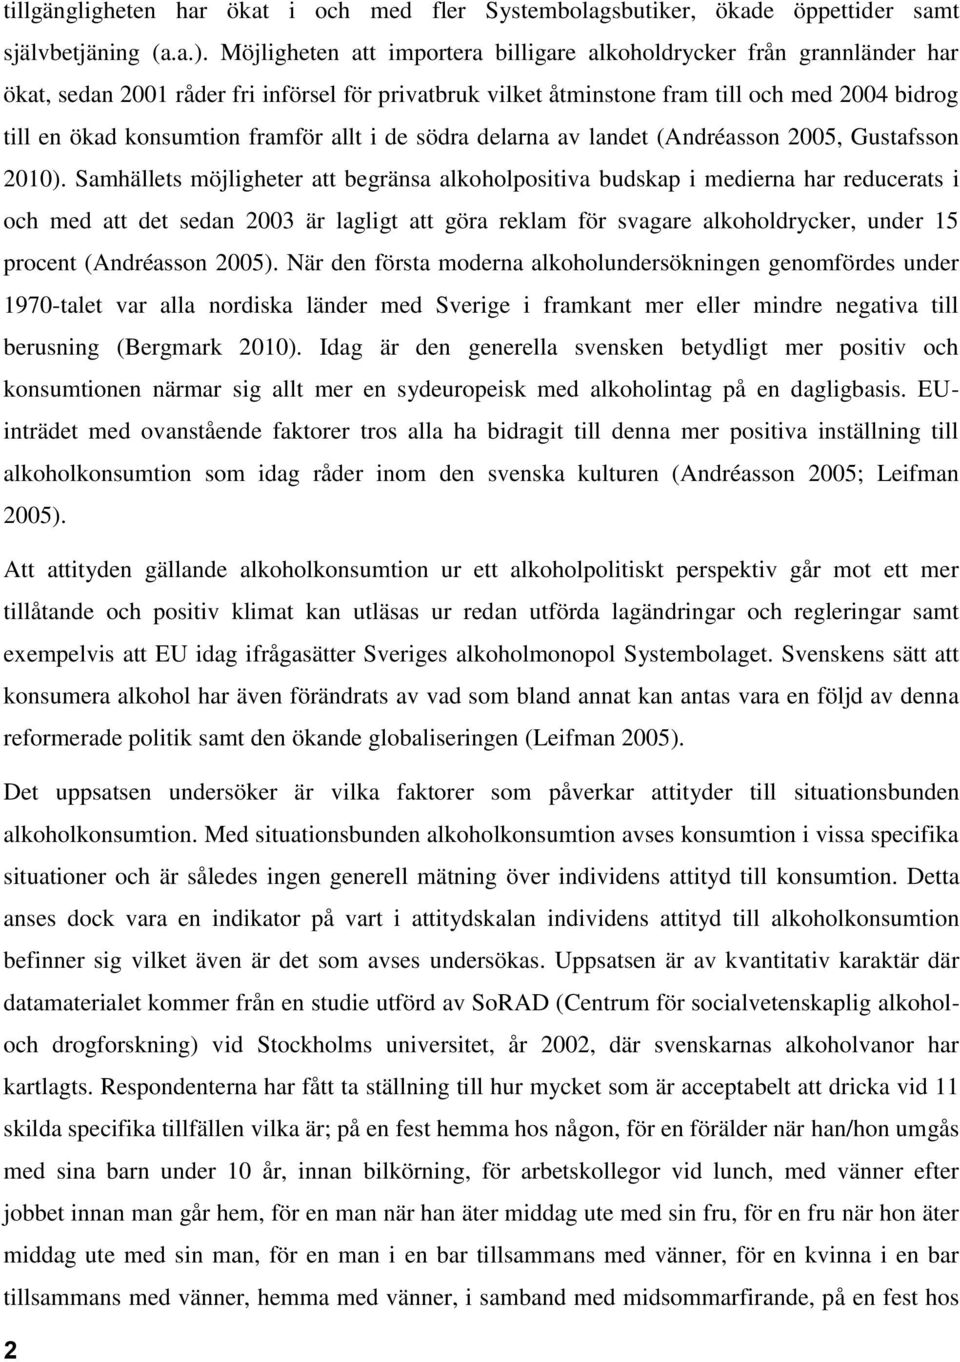 framför allt i de södra delarna av landet (Andréasson 2005, Gustafsson 2010).